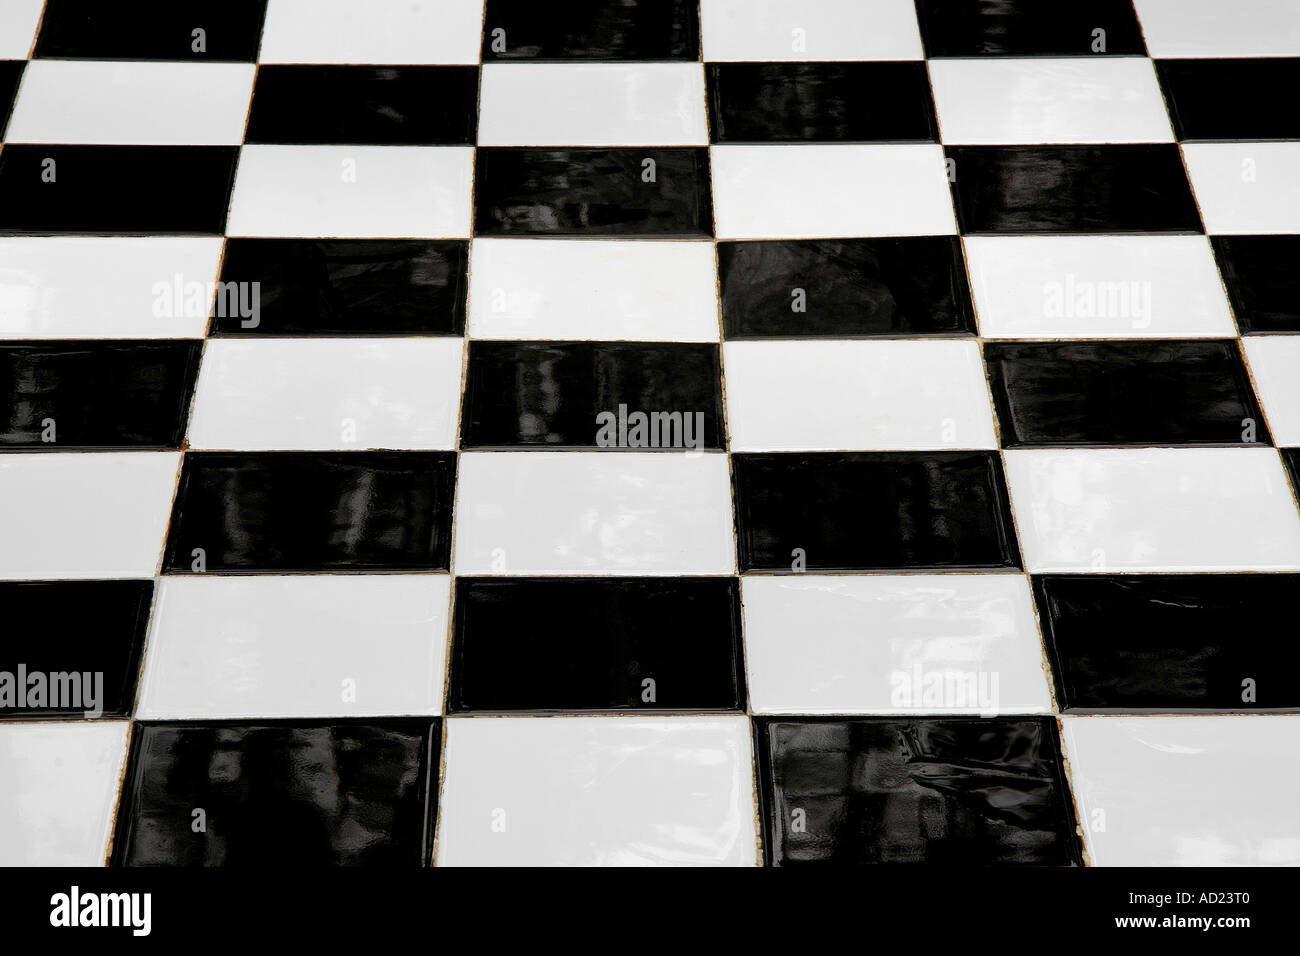 SSK72765 Juego de ajedrez deportes cuadrados en blanco y negro de un tablero de ajedrez Foto de stock